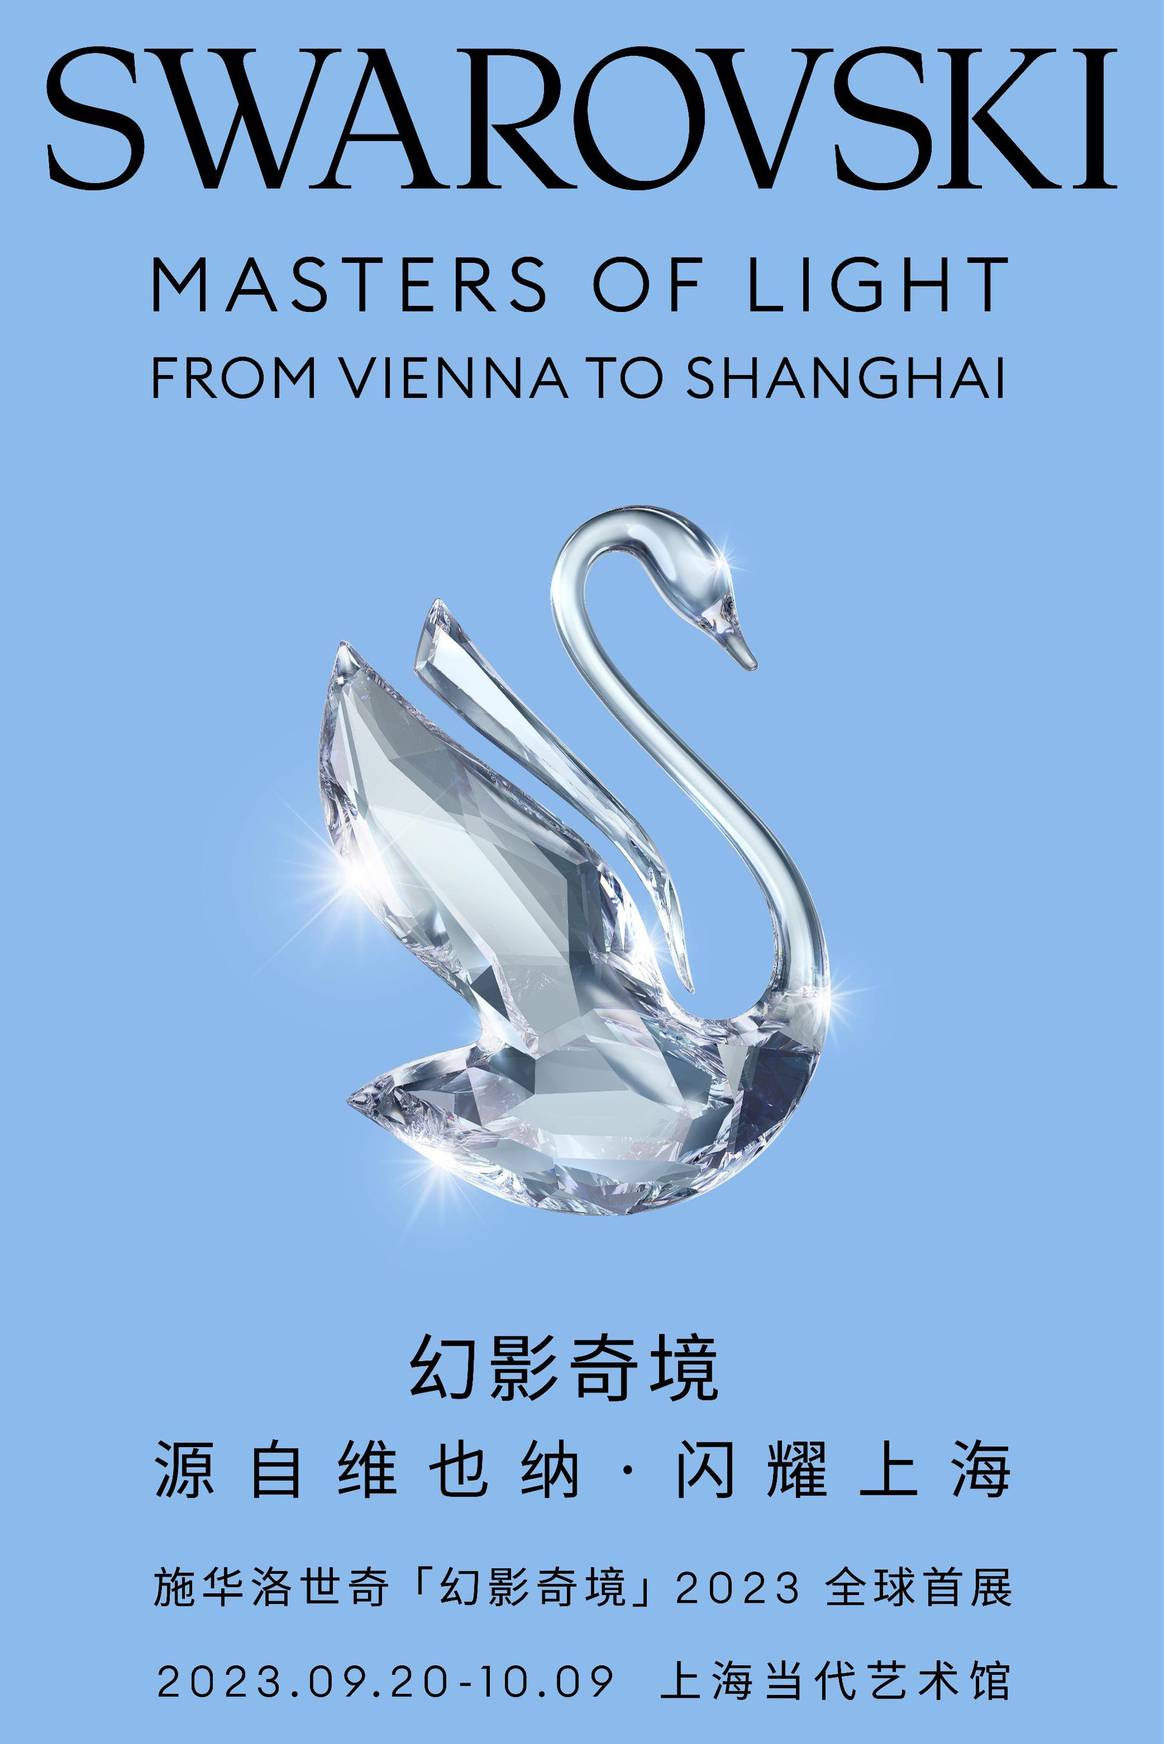 La locandina della mostra di Shanghai